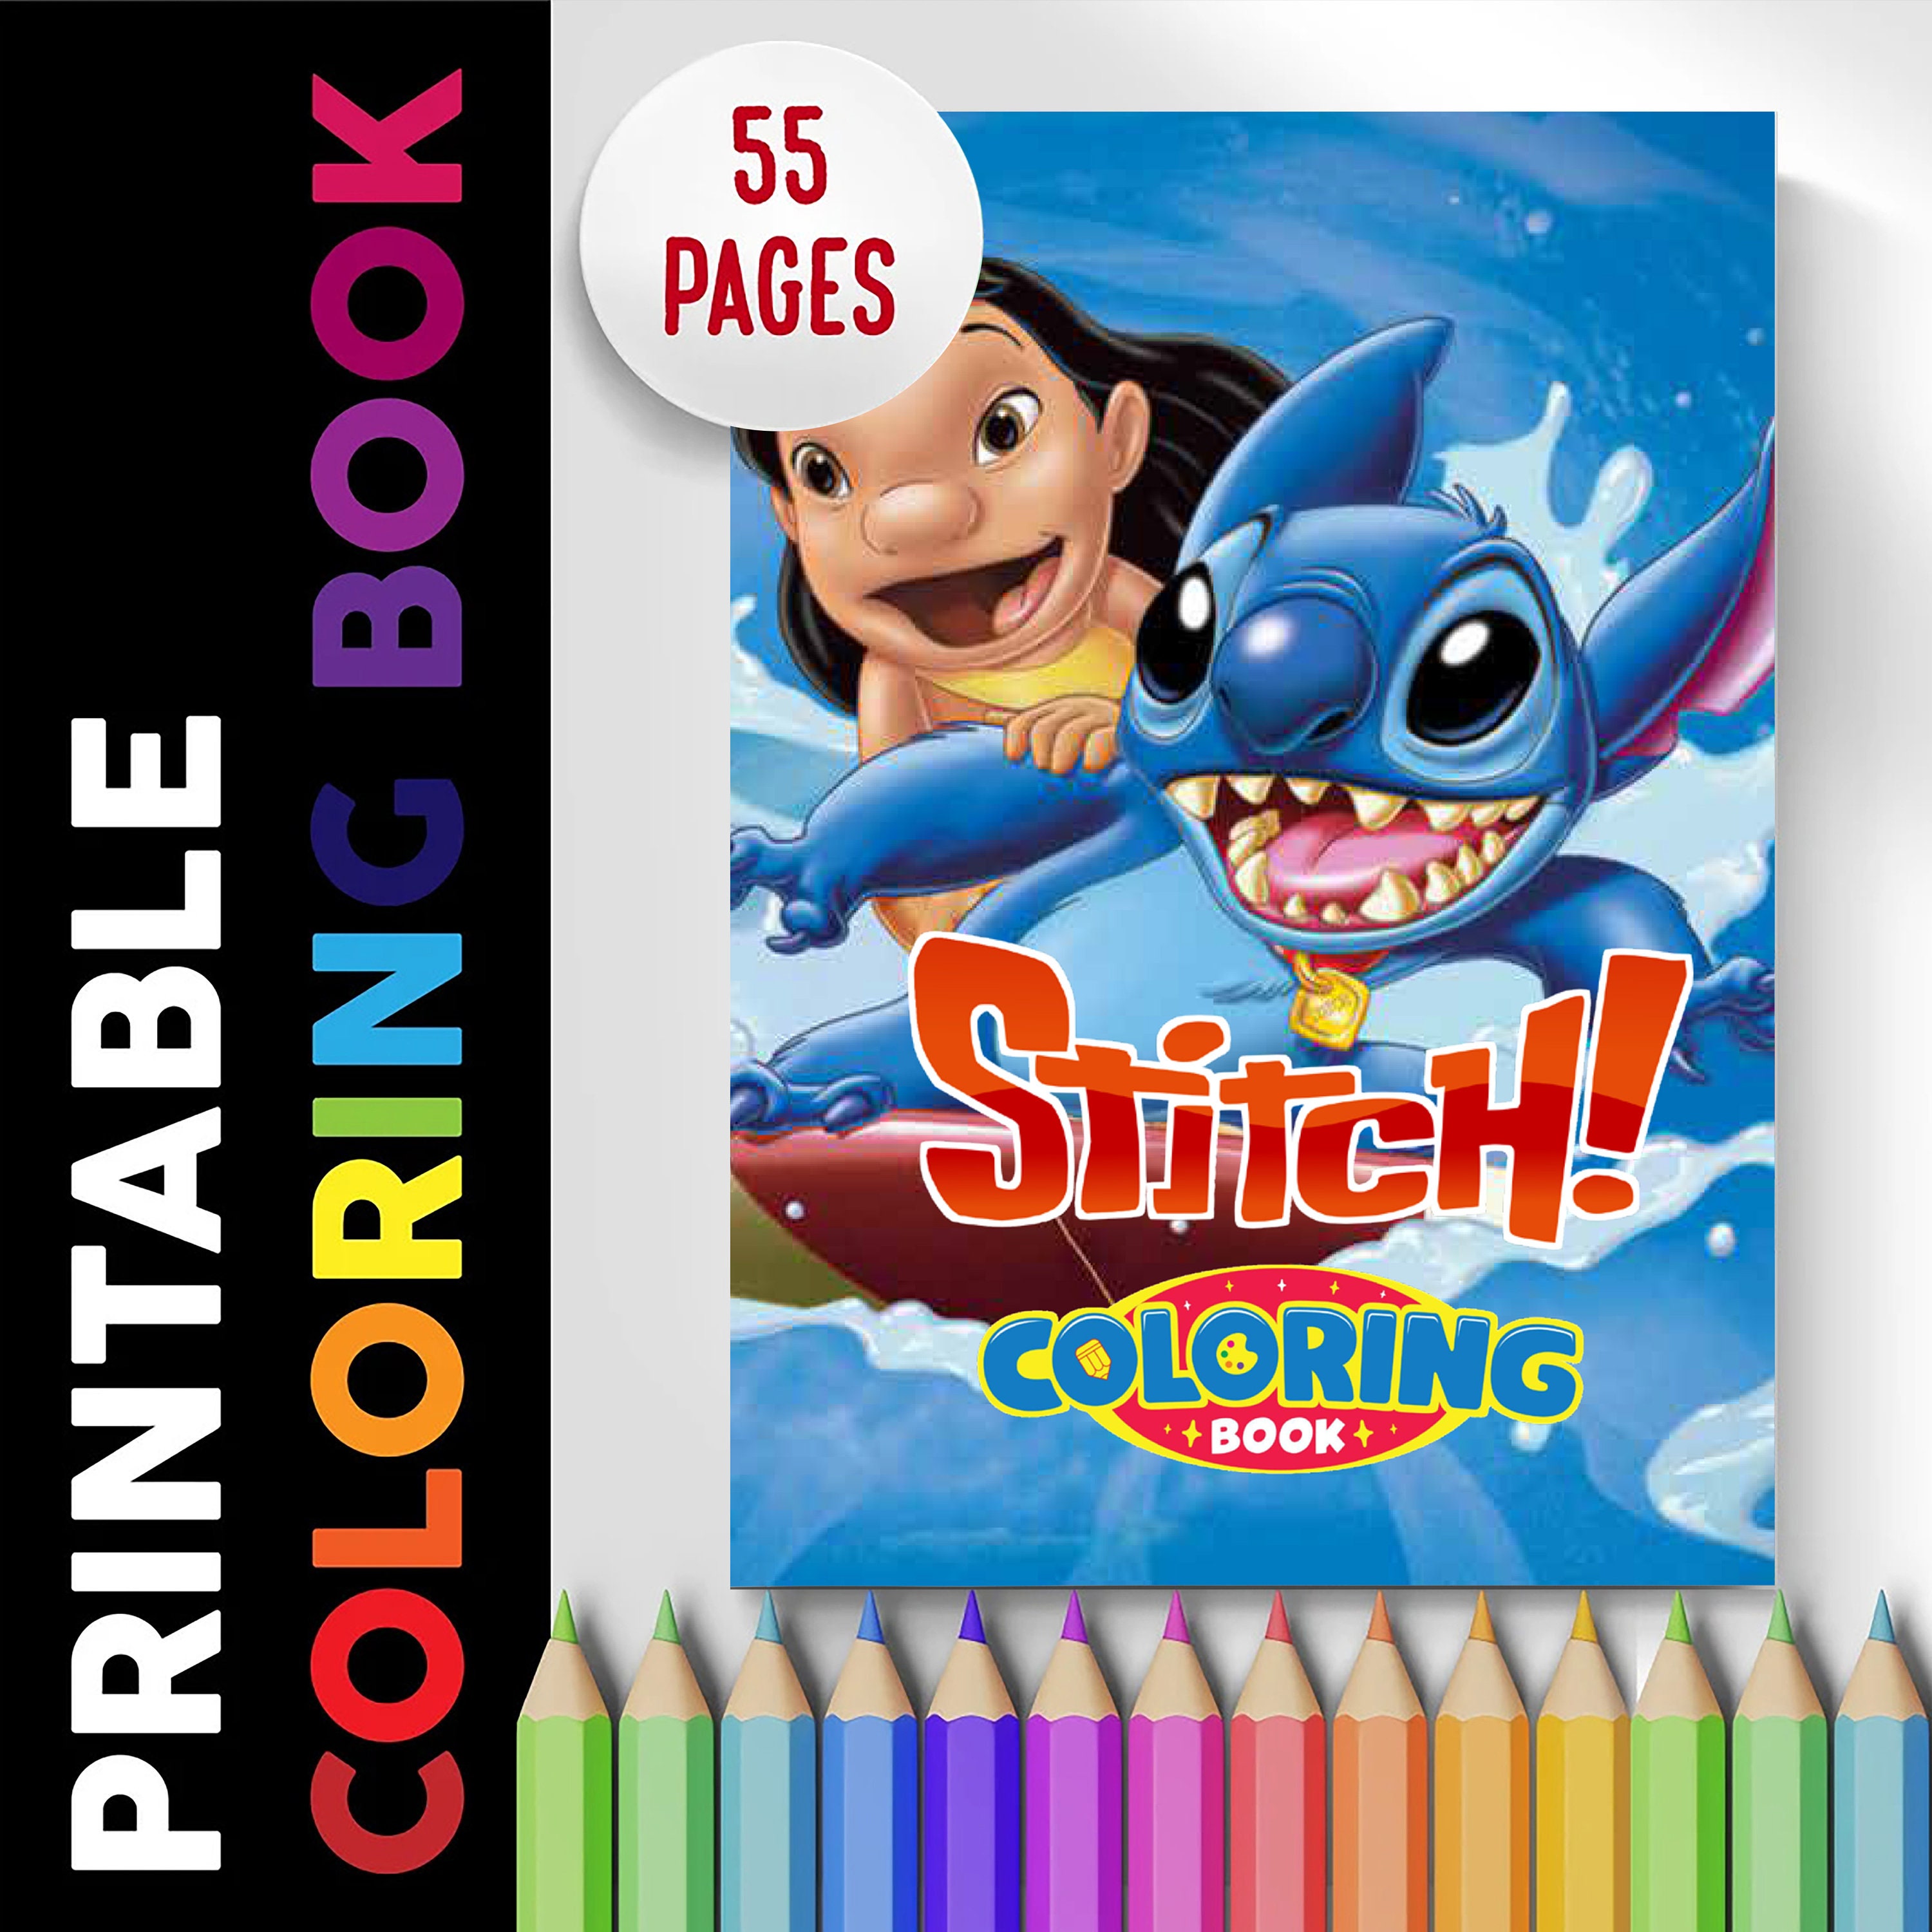 Coloriages Disney Stoner imprimables gratuits pour les enfants et les  adultes